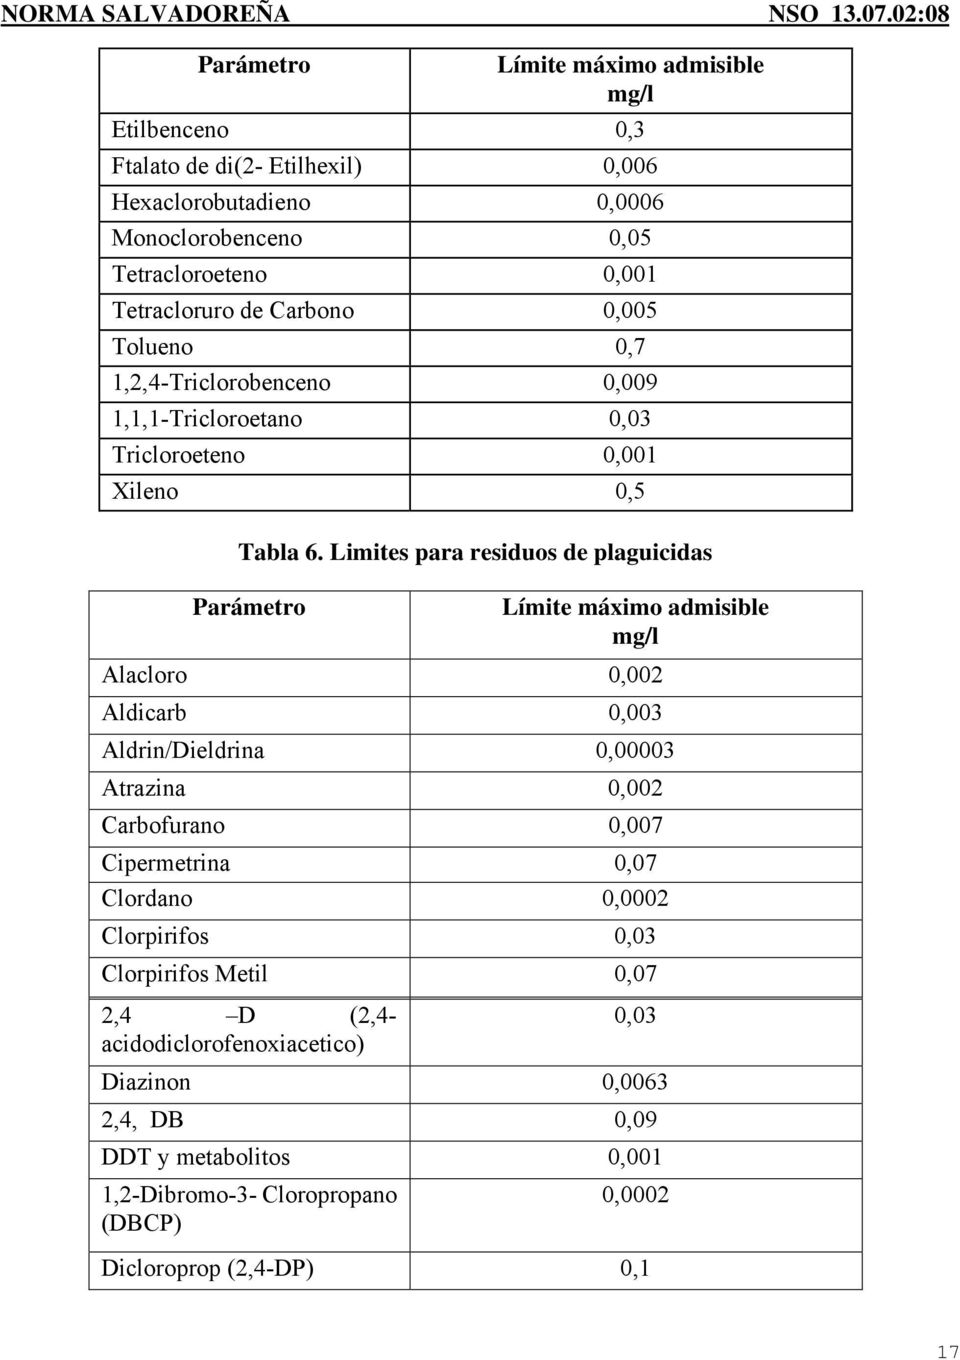 Limites para residuos de plaguicidas Parámetro Límite máximo admisible mg/l Alacloro 0,002 Aldicarb 0,003 Aldrin/Dieldrina 0,00003 Atrazina 0,002 Carbofurano 0,007